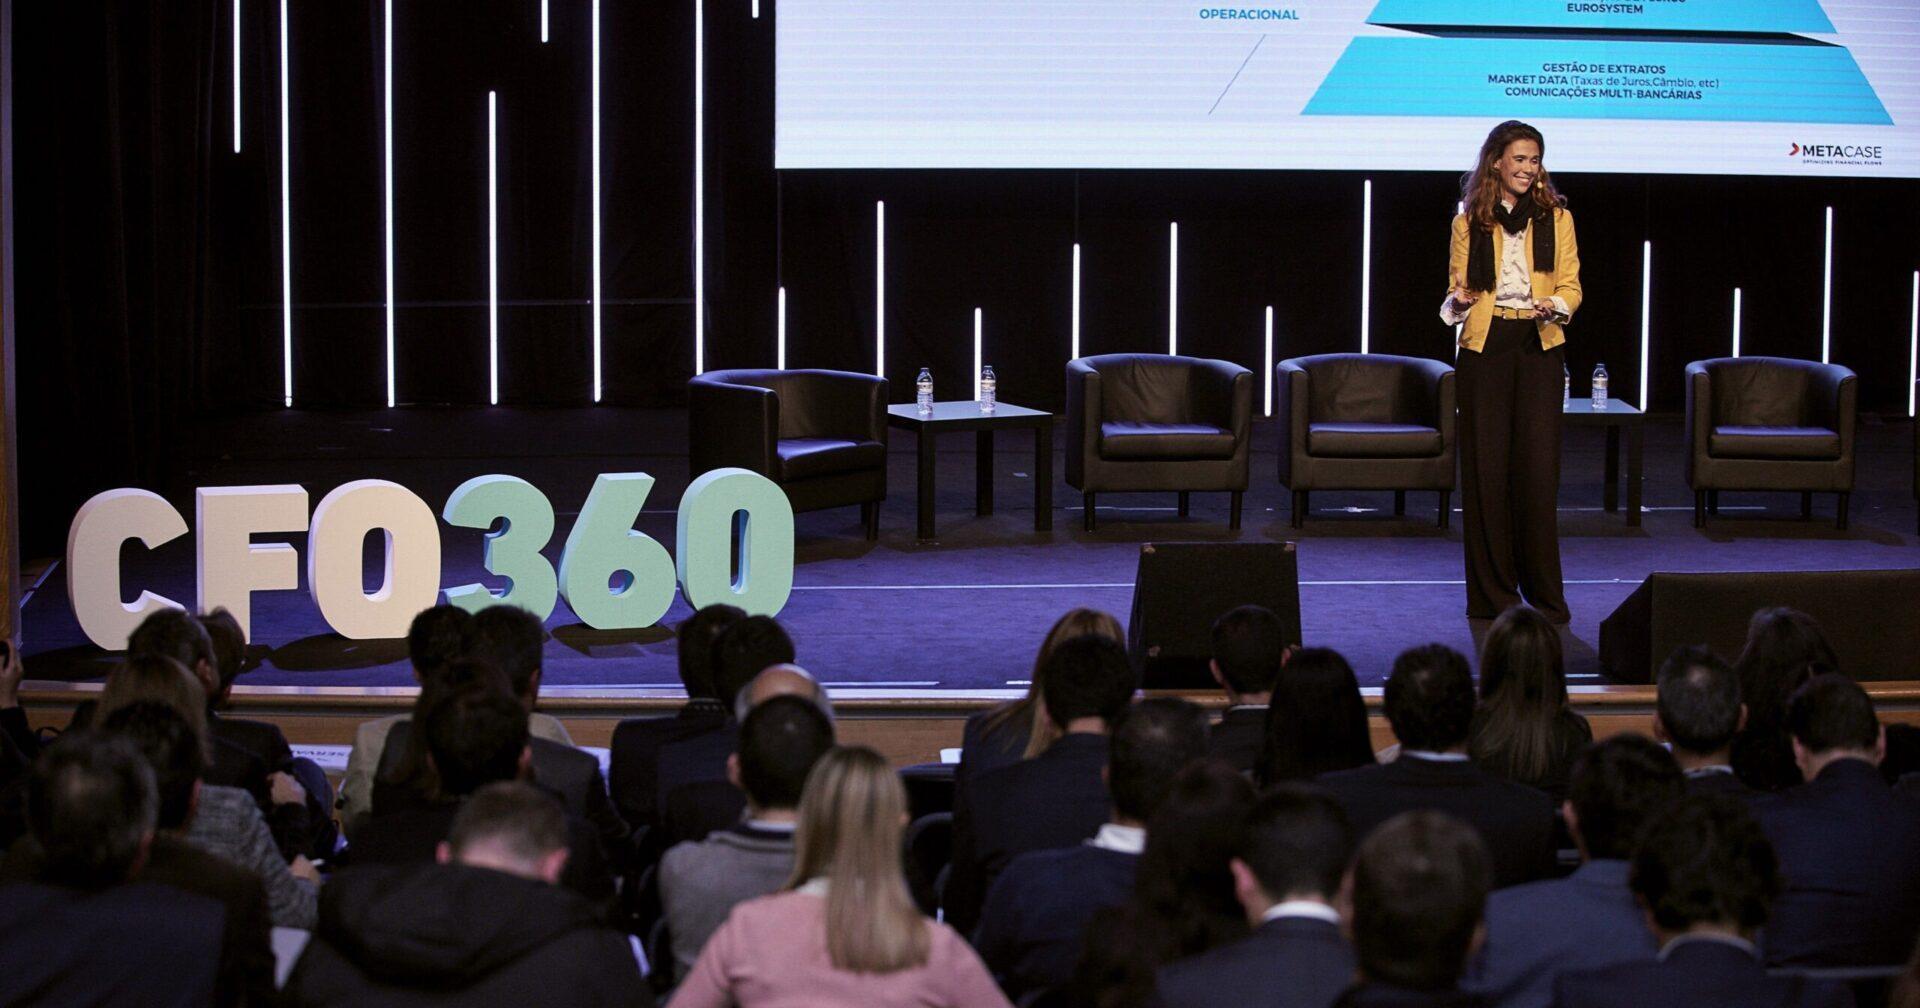 MetaCase patrocina o encontro CFO 360 em Lisboa